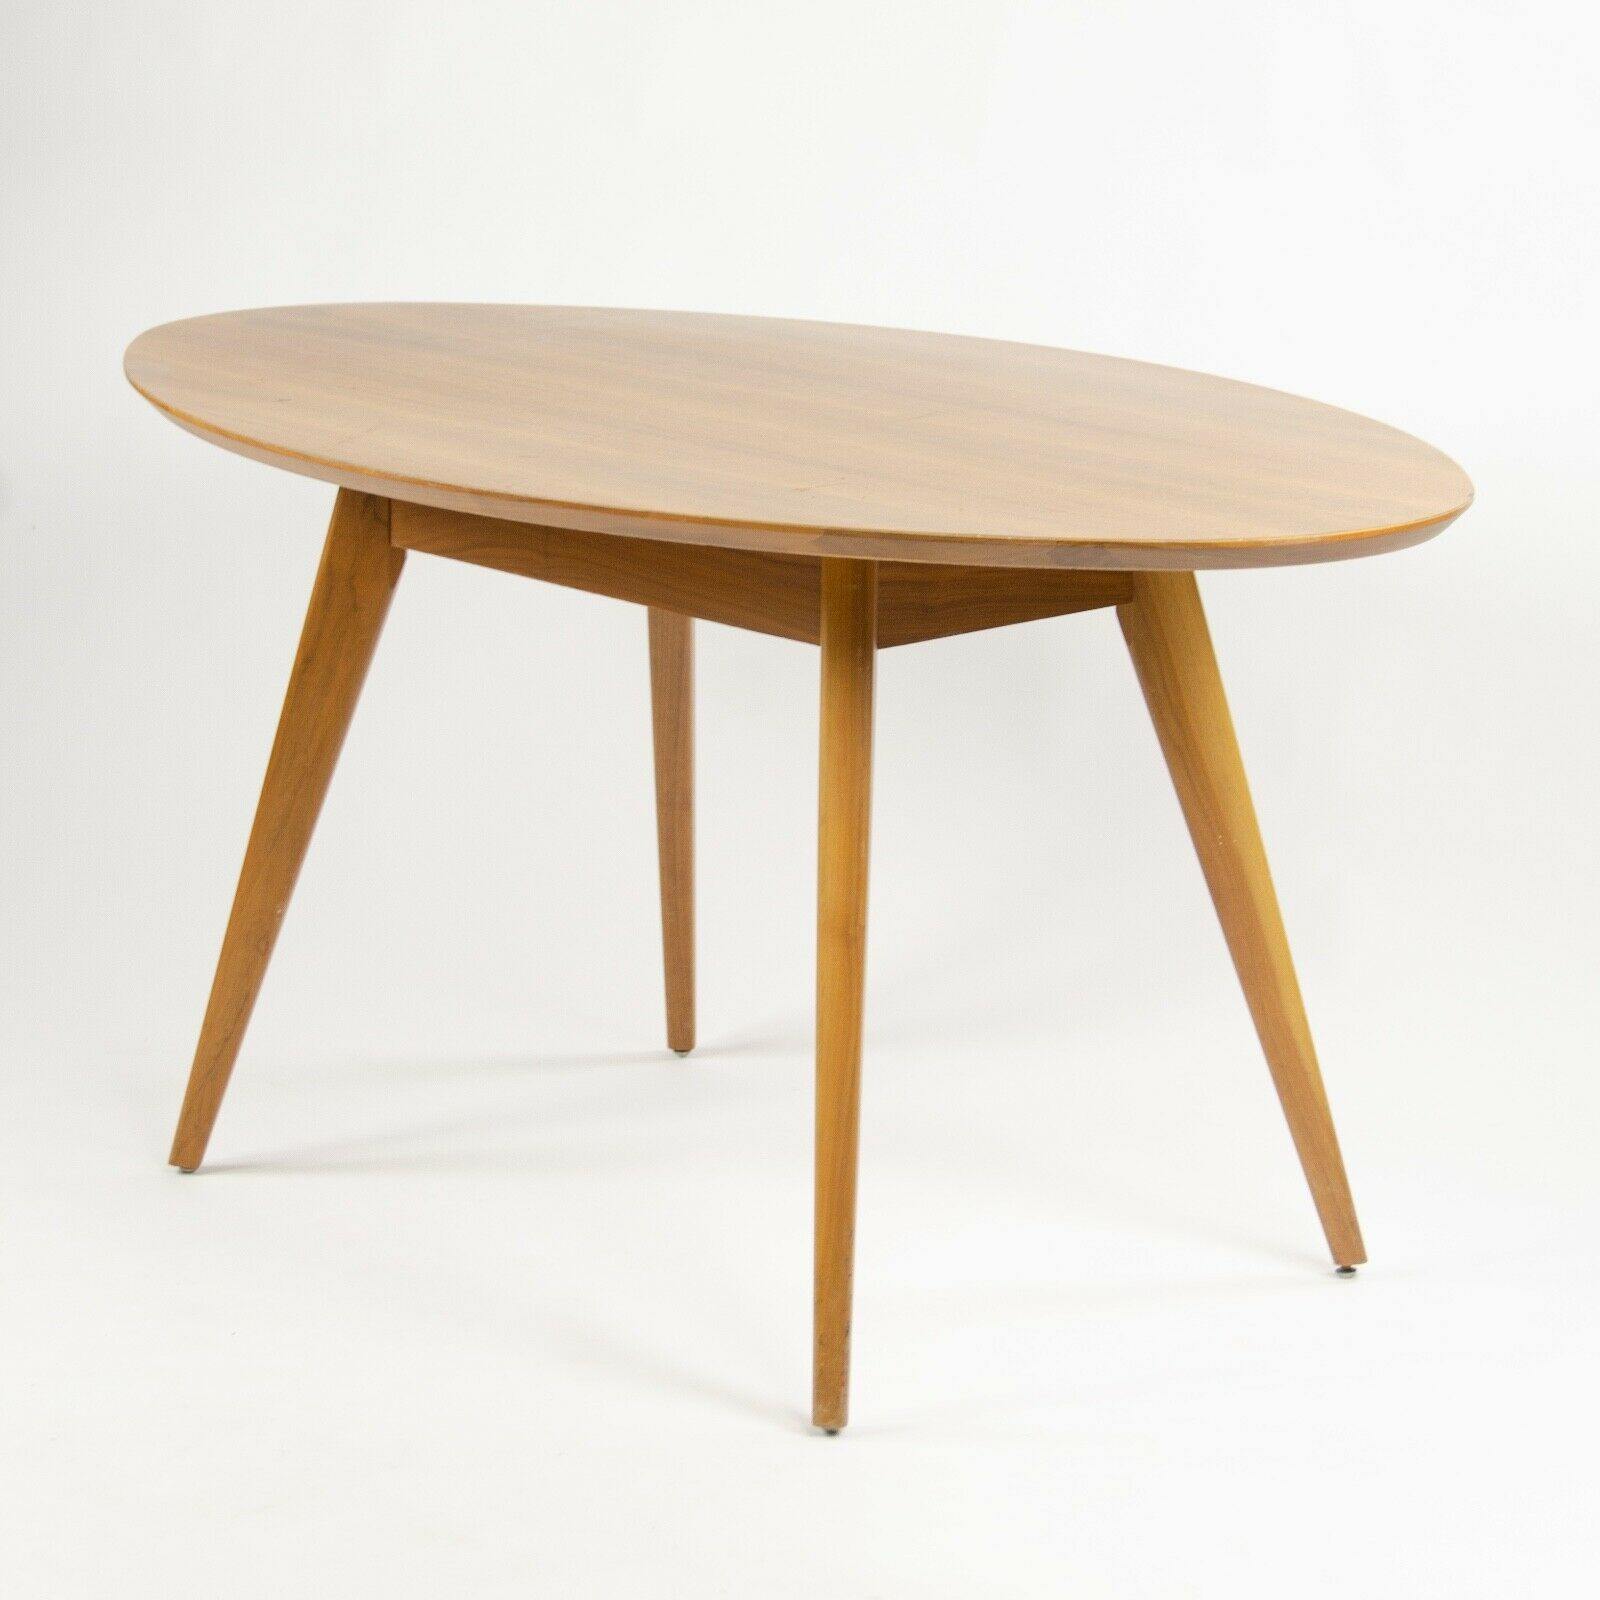 Custom Oval Table